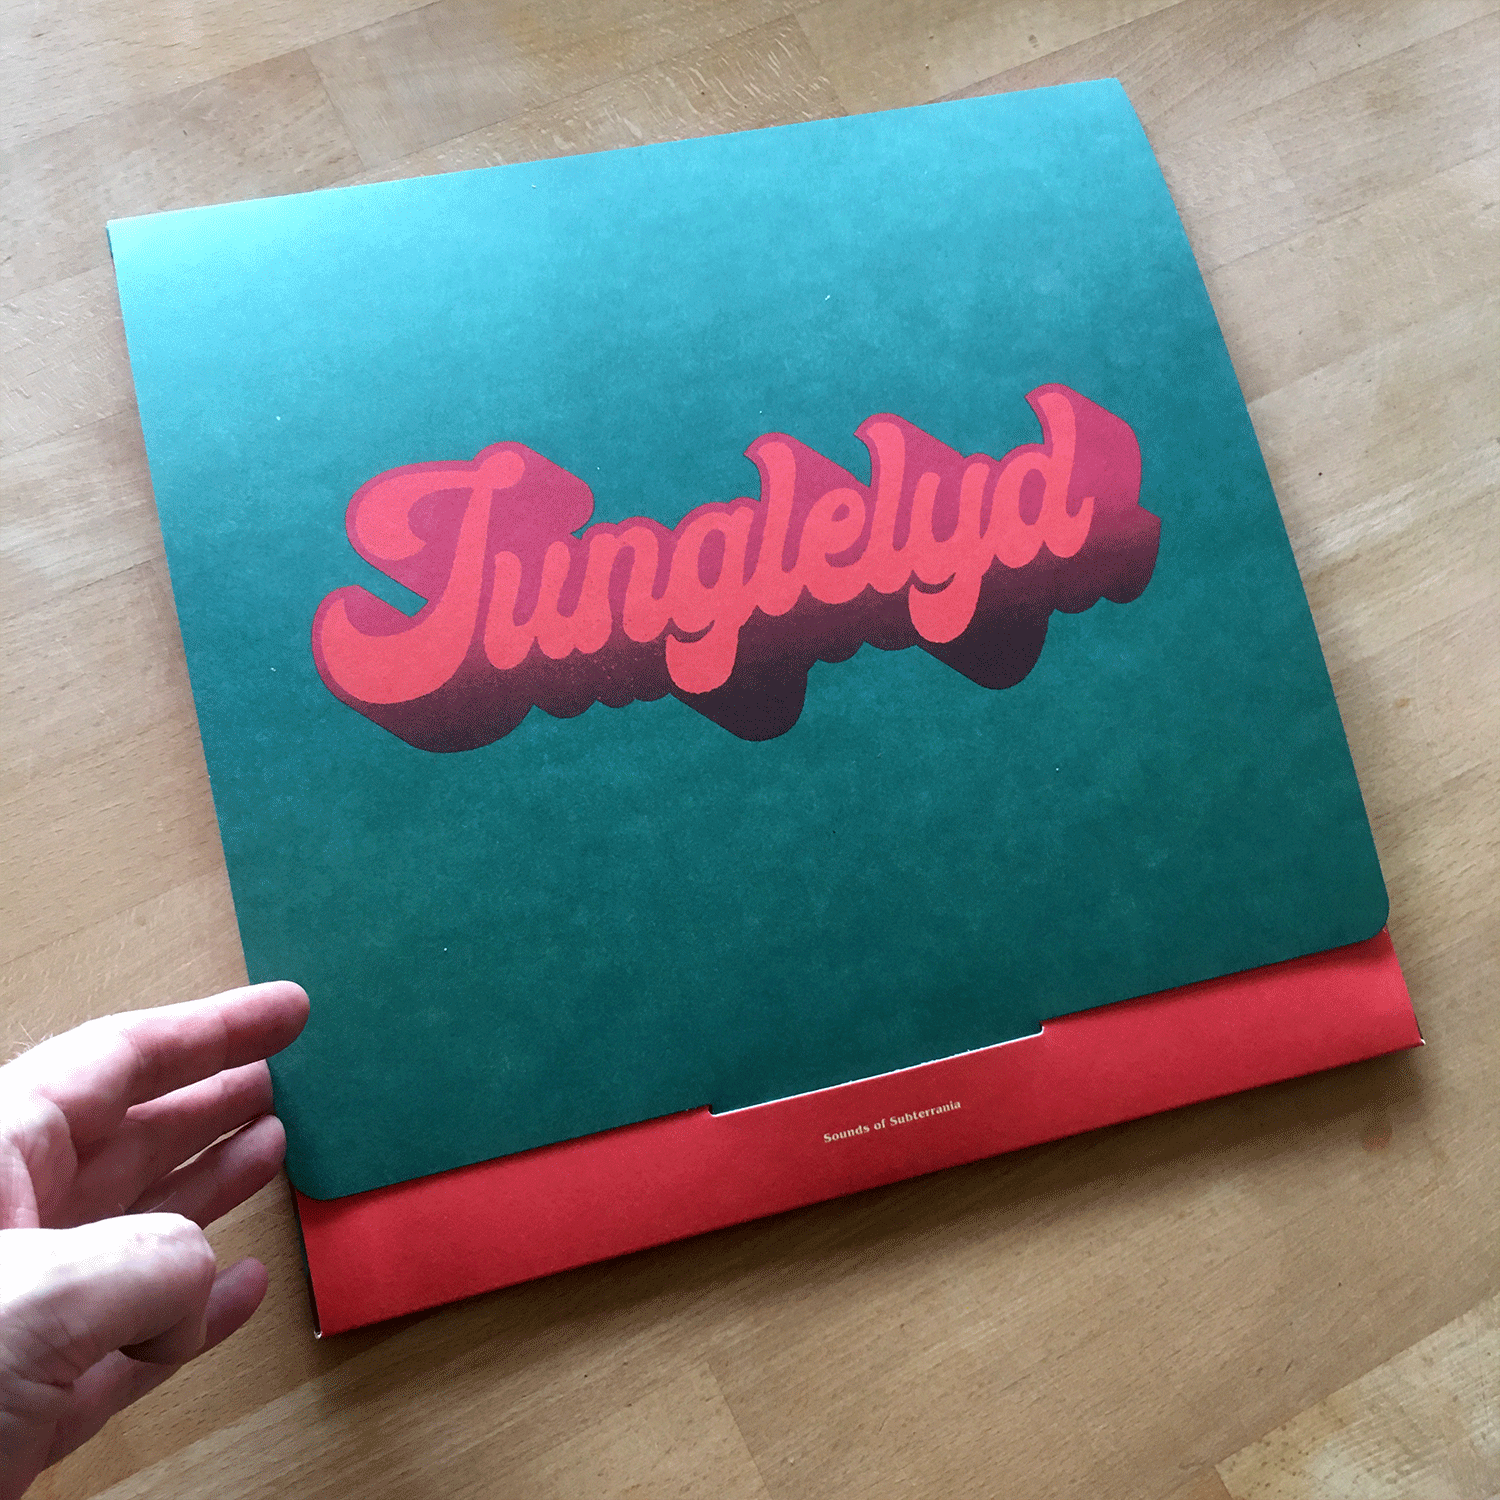 junglelyd-album-photo-2